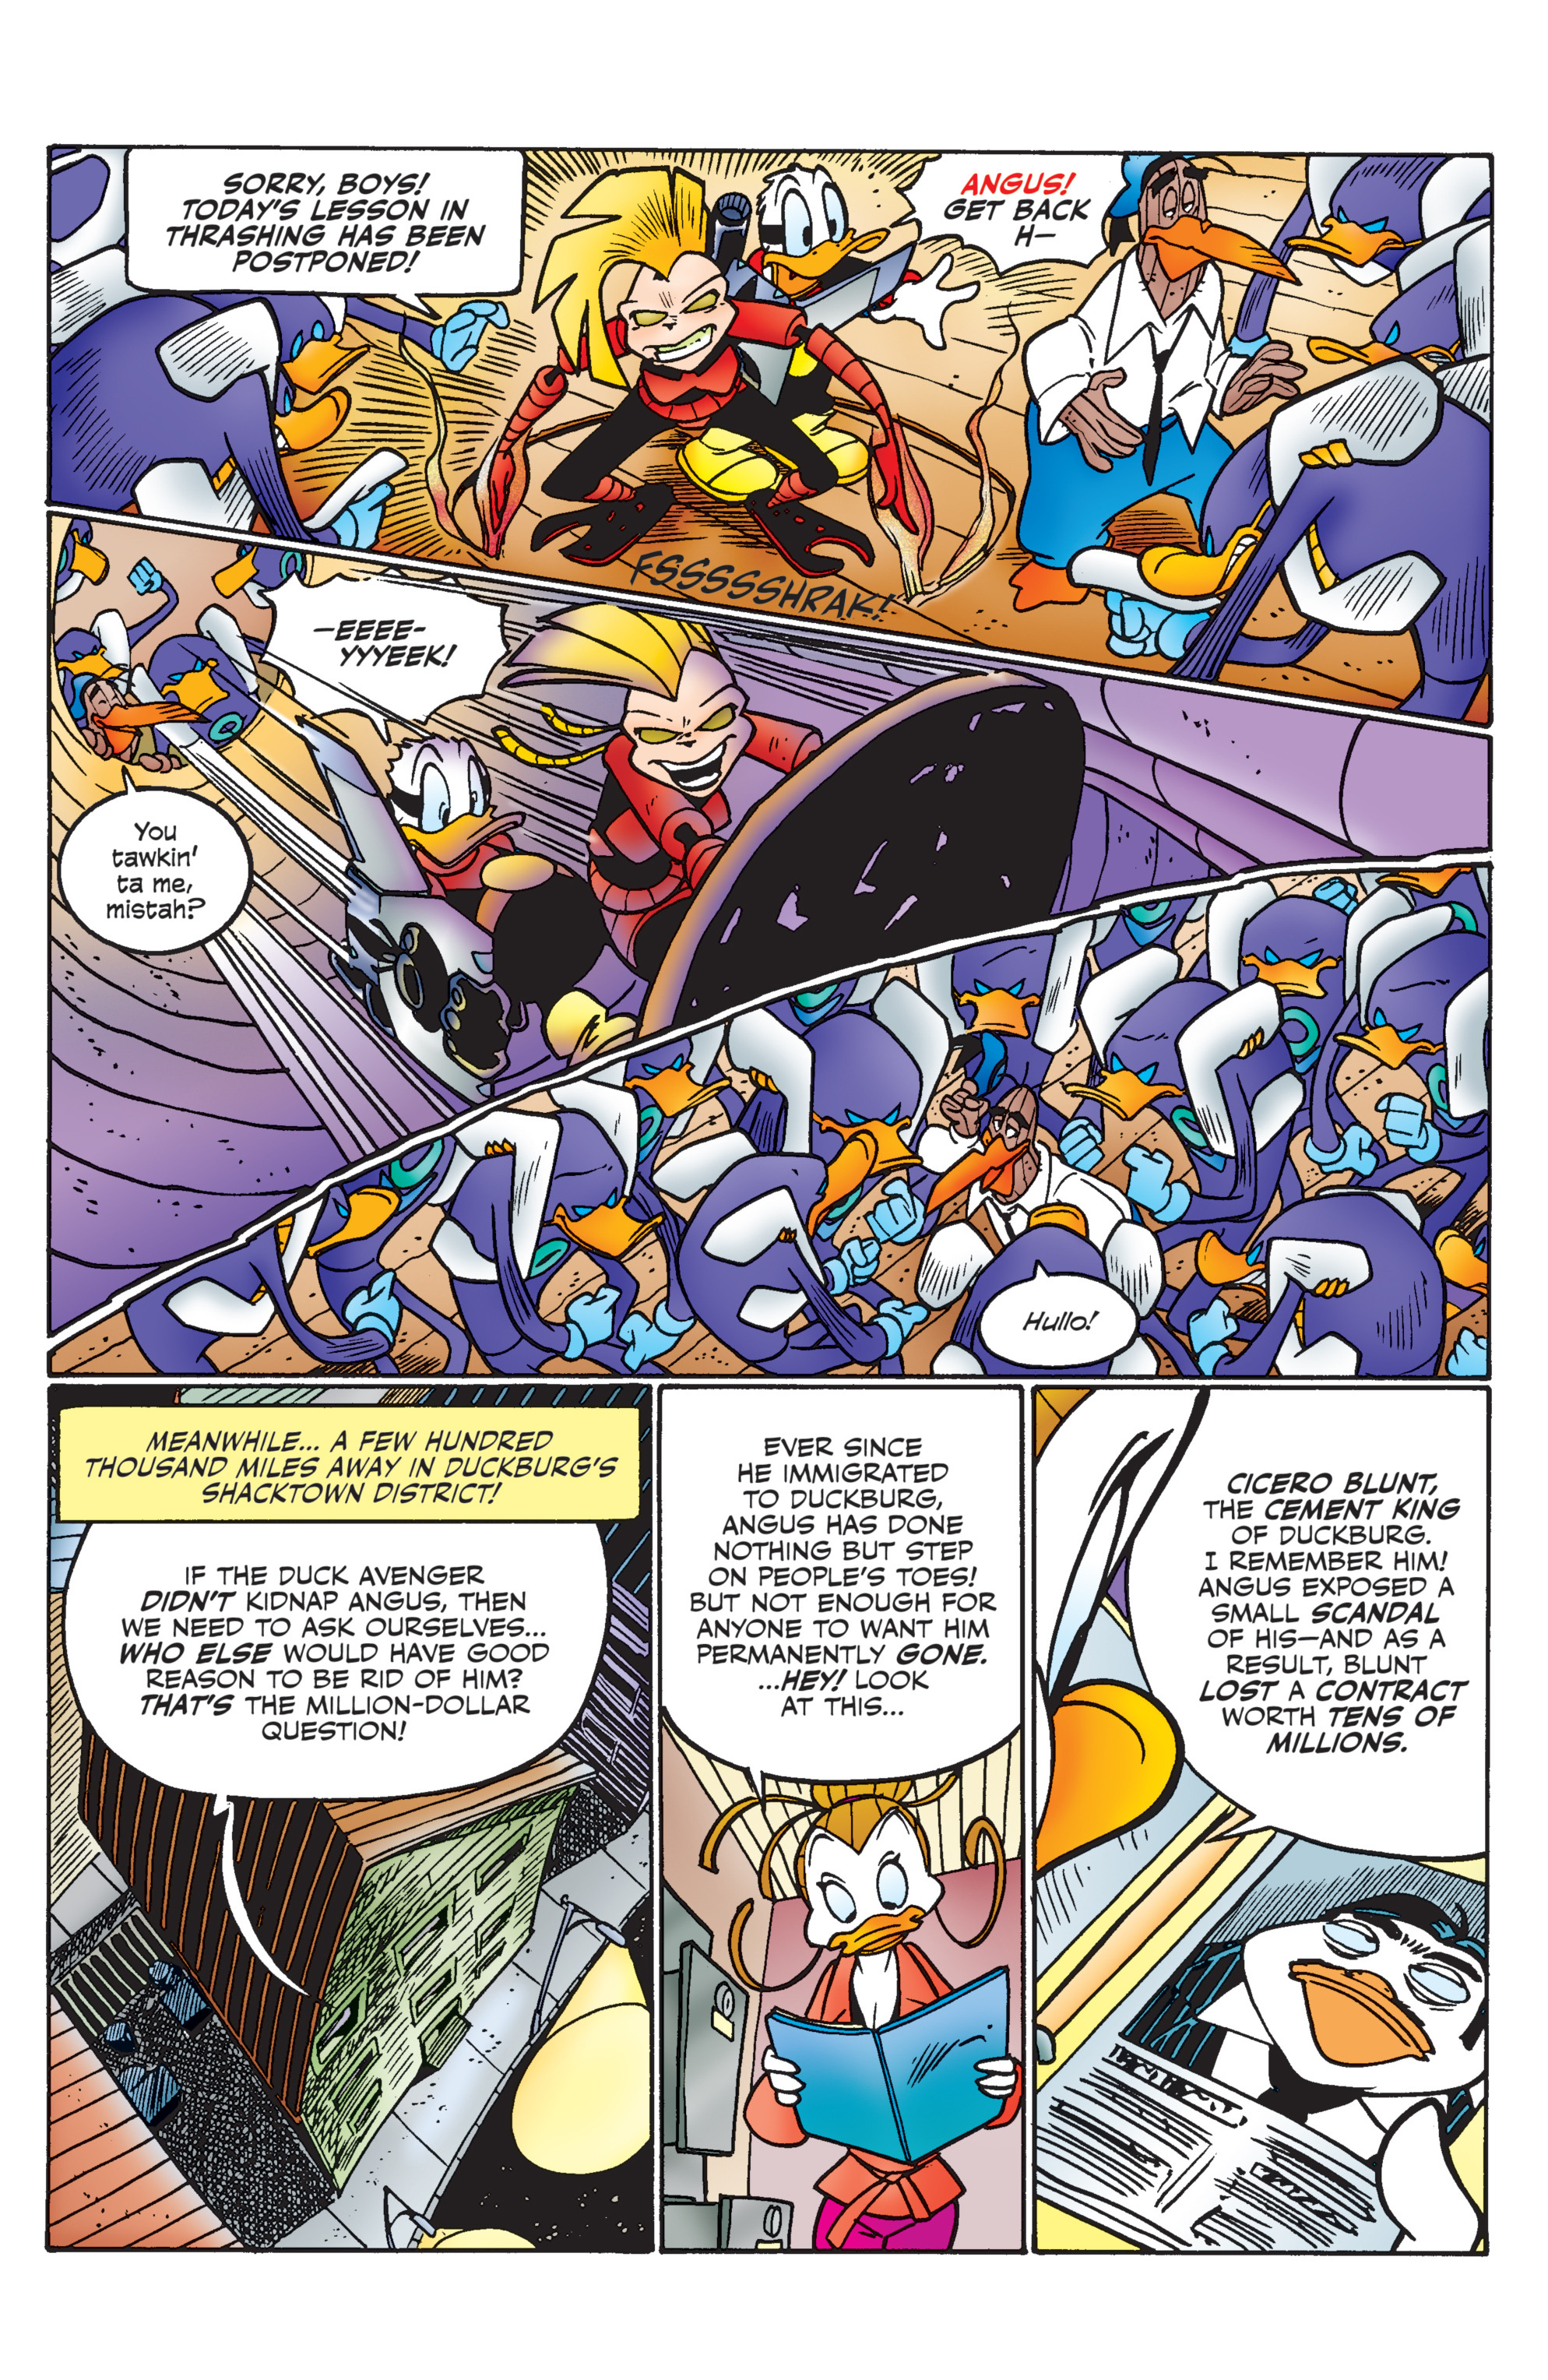 Read online Duck Avenger comic -  Issue #3 - 51